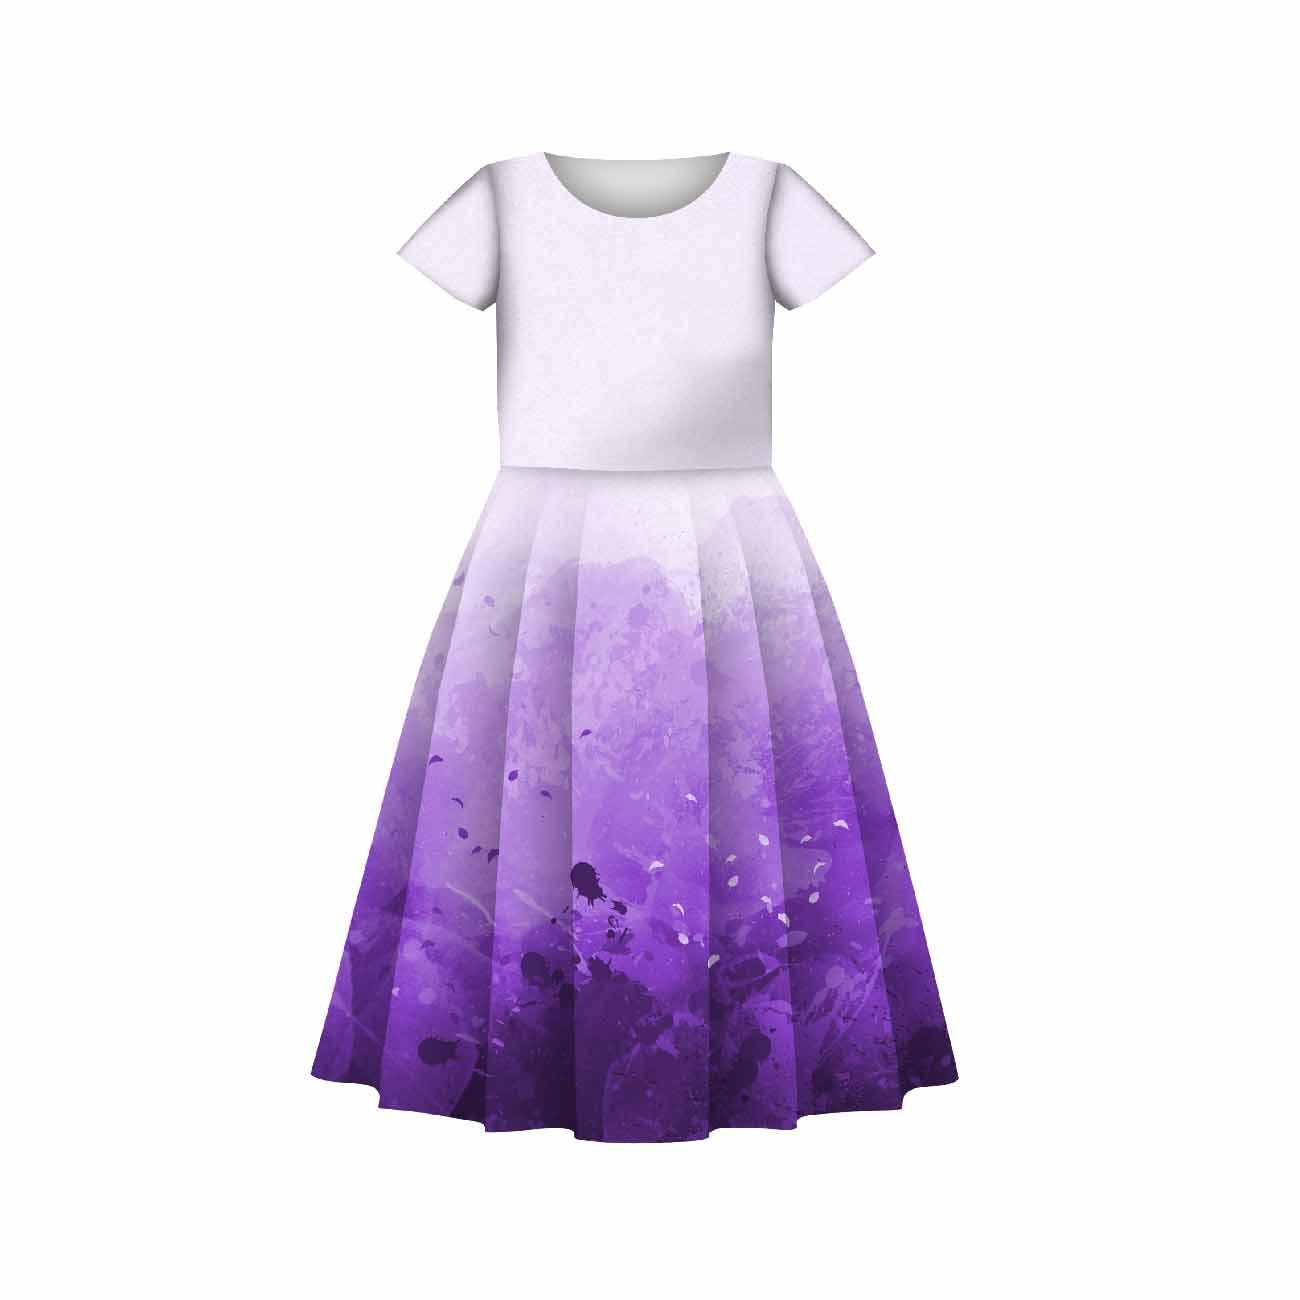 Dziecięca sukienka “Mia” - KLEKSY (fioletowy) - zestaw do uszycia